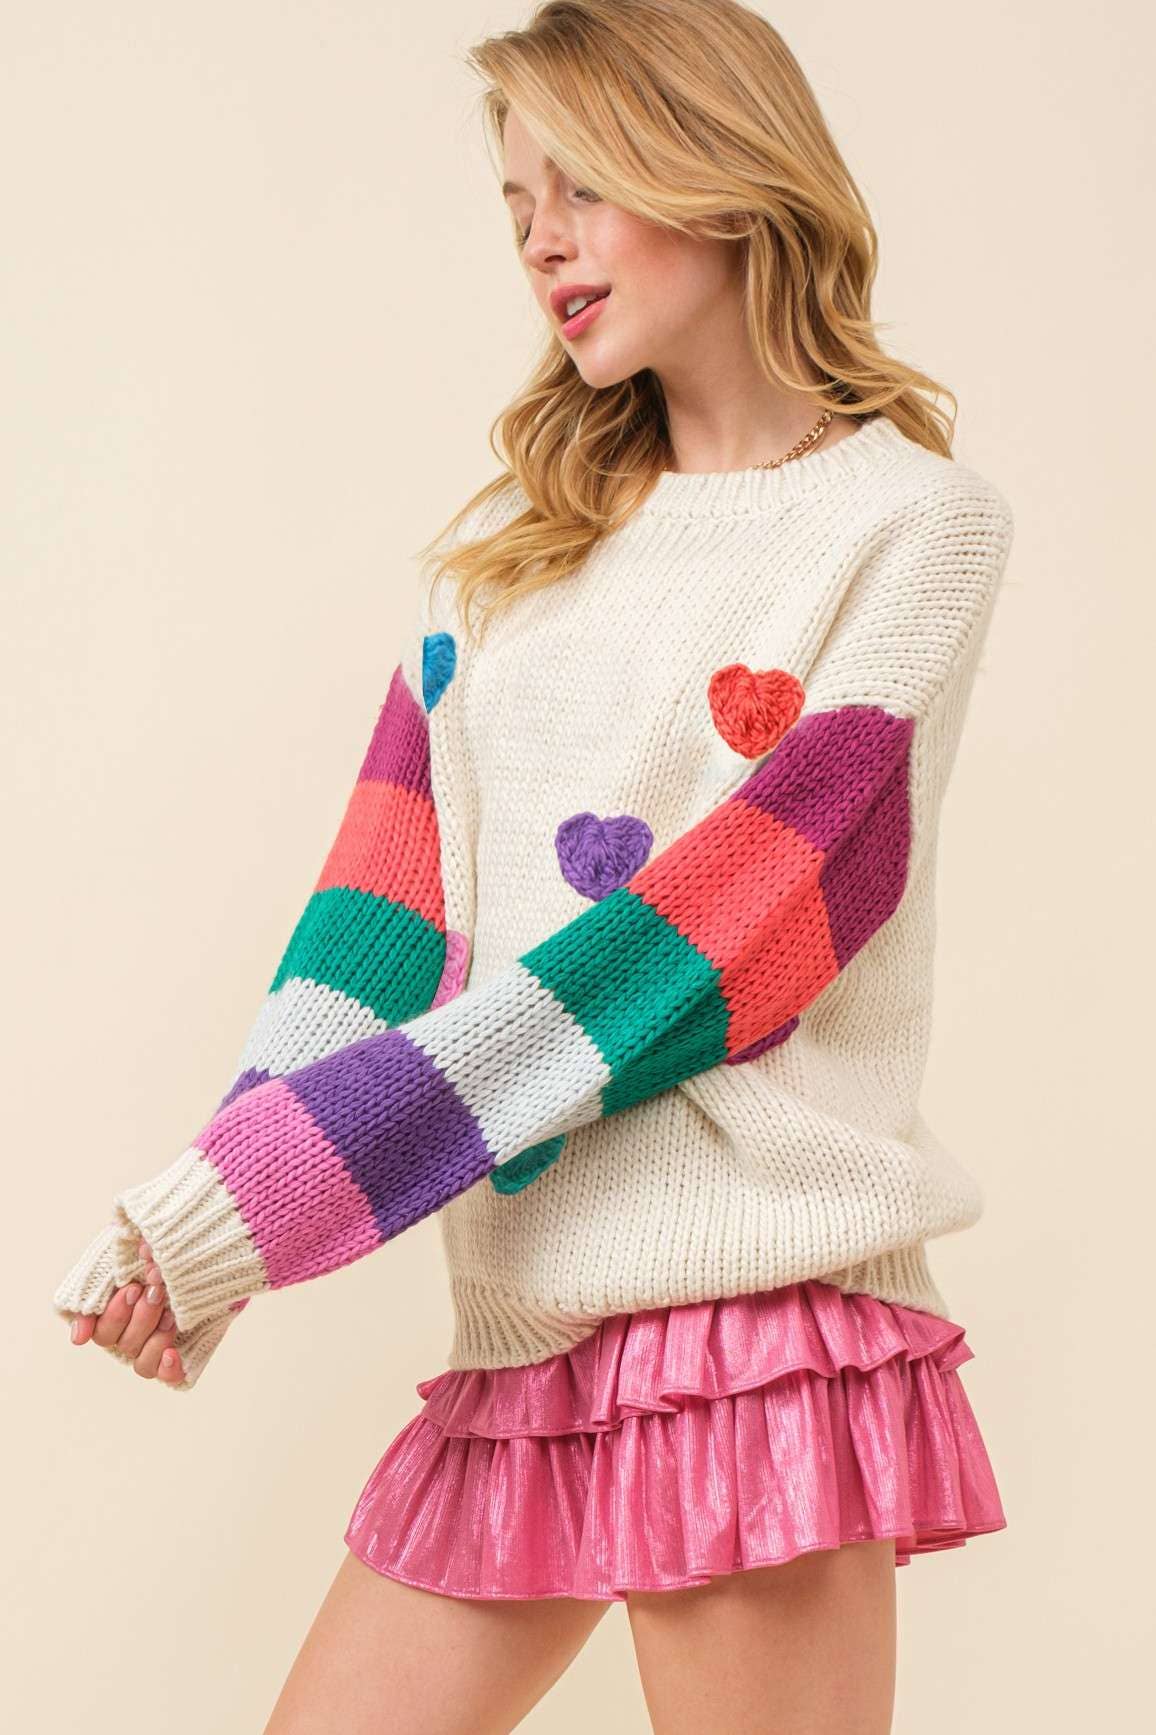 Main Strip - 3D Heart Crochet Multi Stripe Contrast Sweater